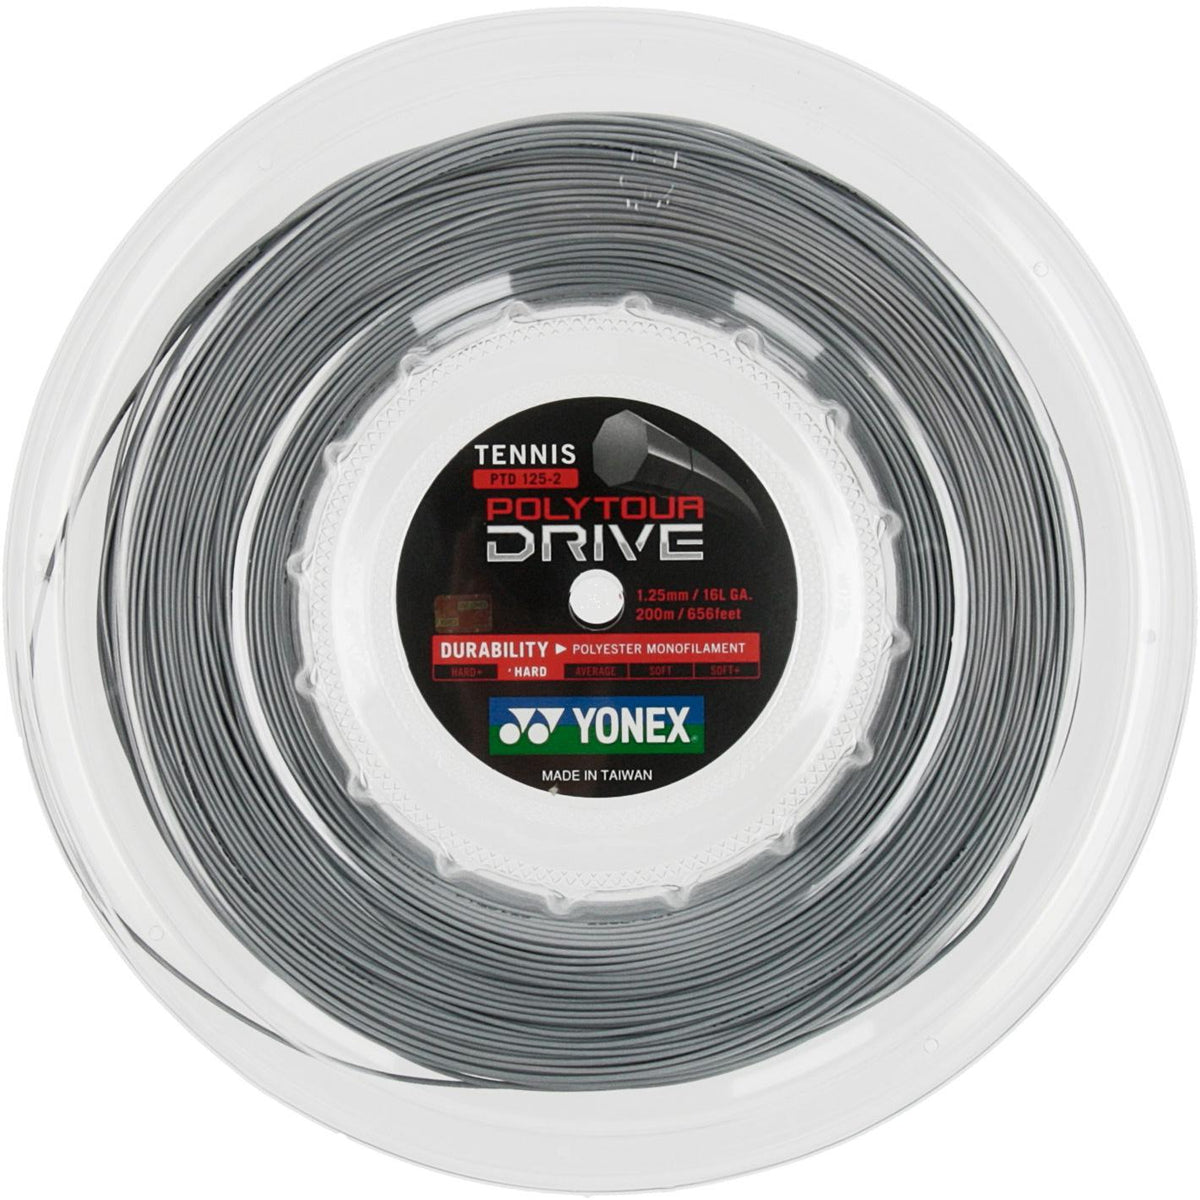 Yonex Polytour Drive 1.25 mm 200m 网球线